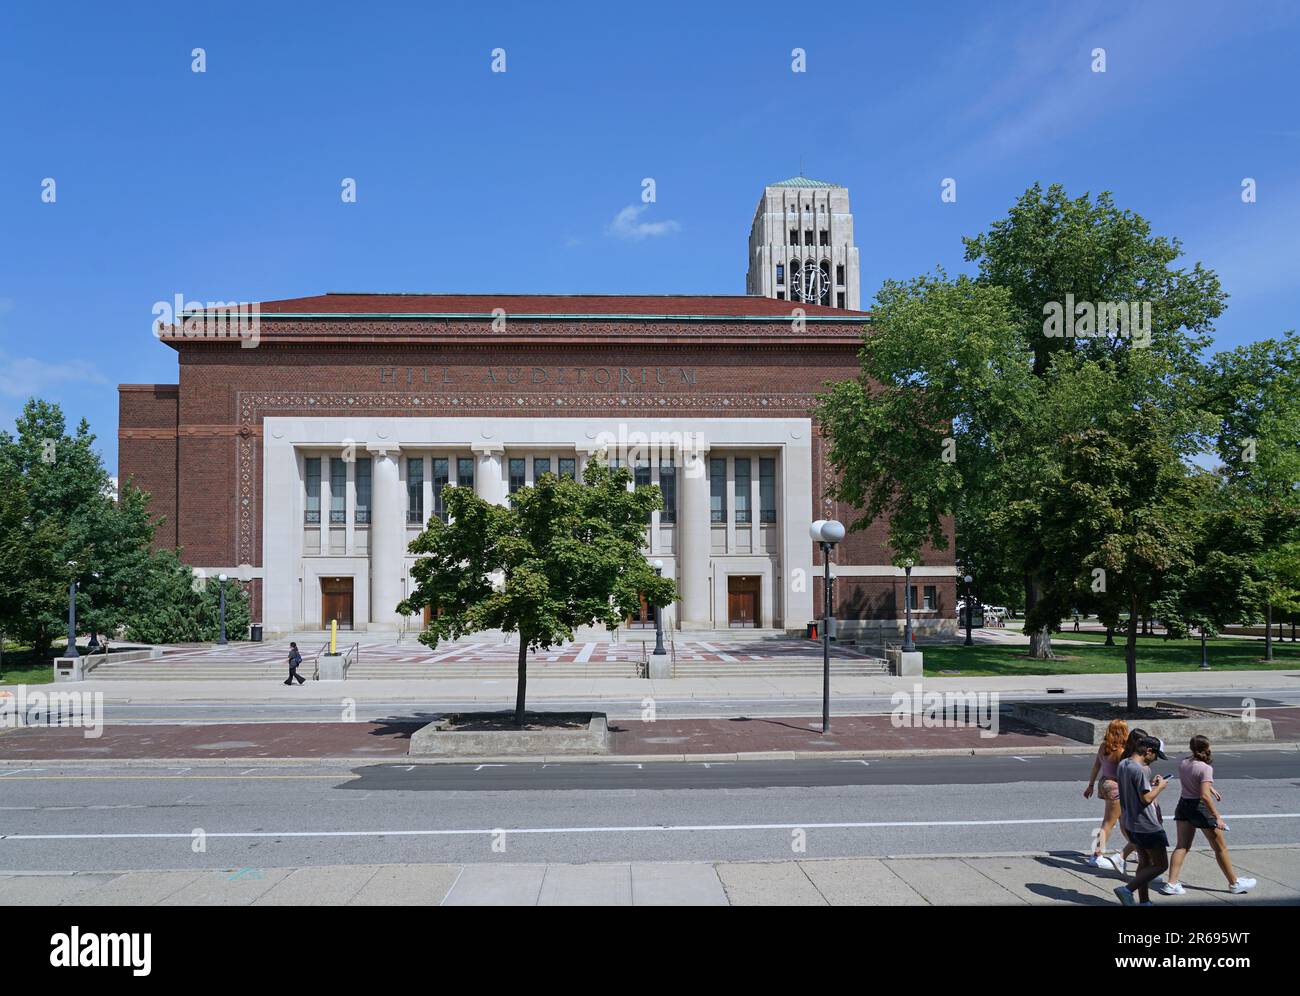 Des étudiants qui marchent sur le campus de l'Université du Michigan, Ann Arbor, avec un grand auditorium et une tour d'horloge Banque D'Images